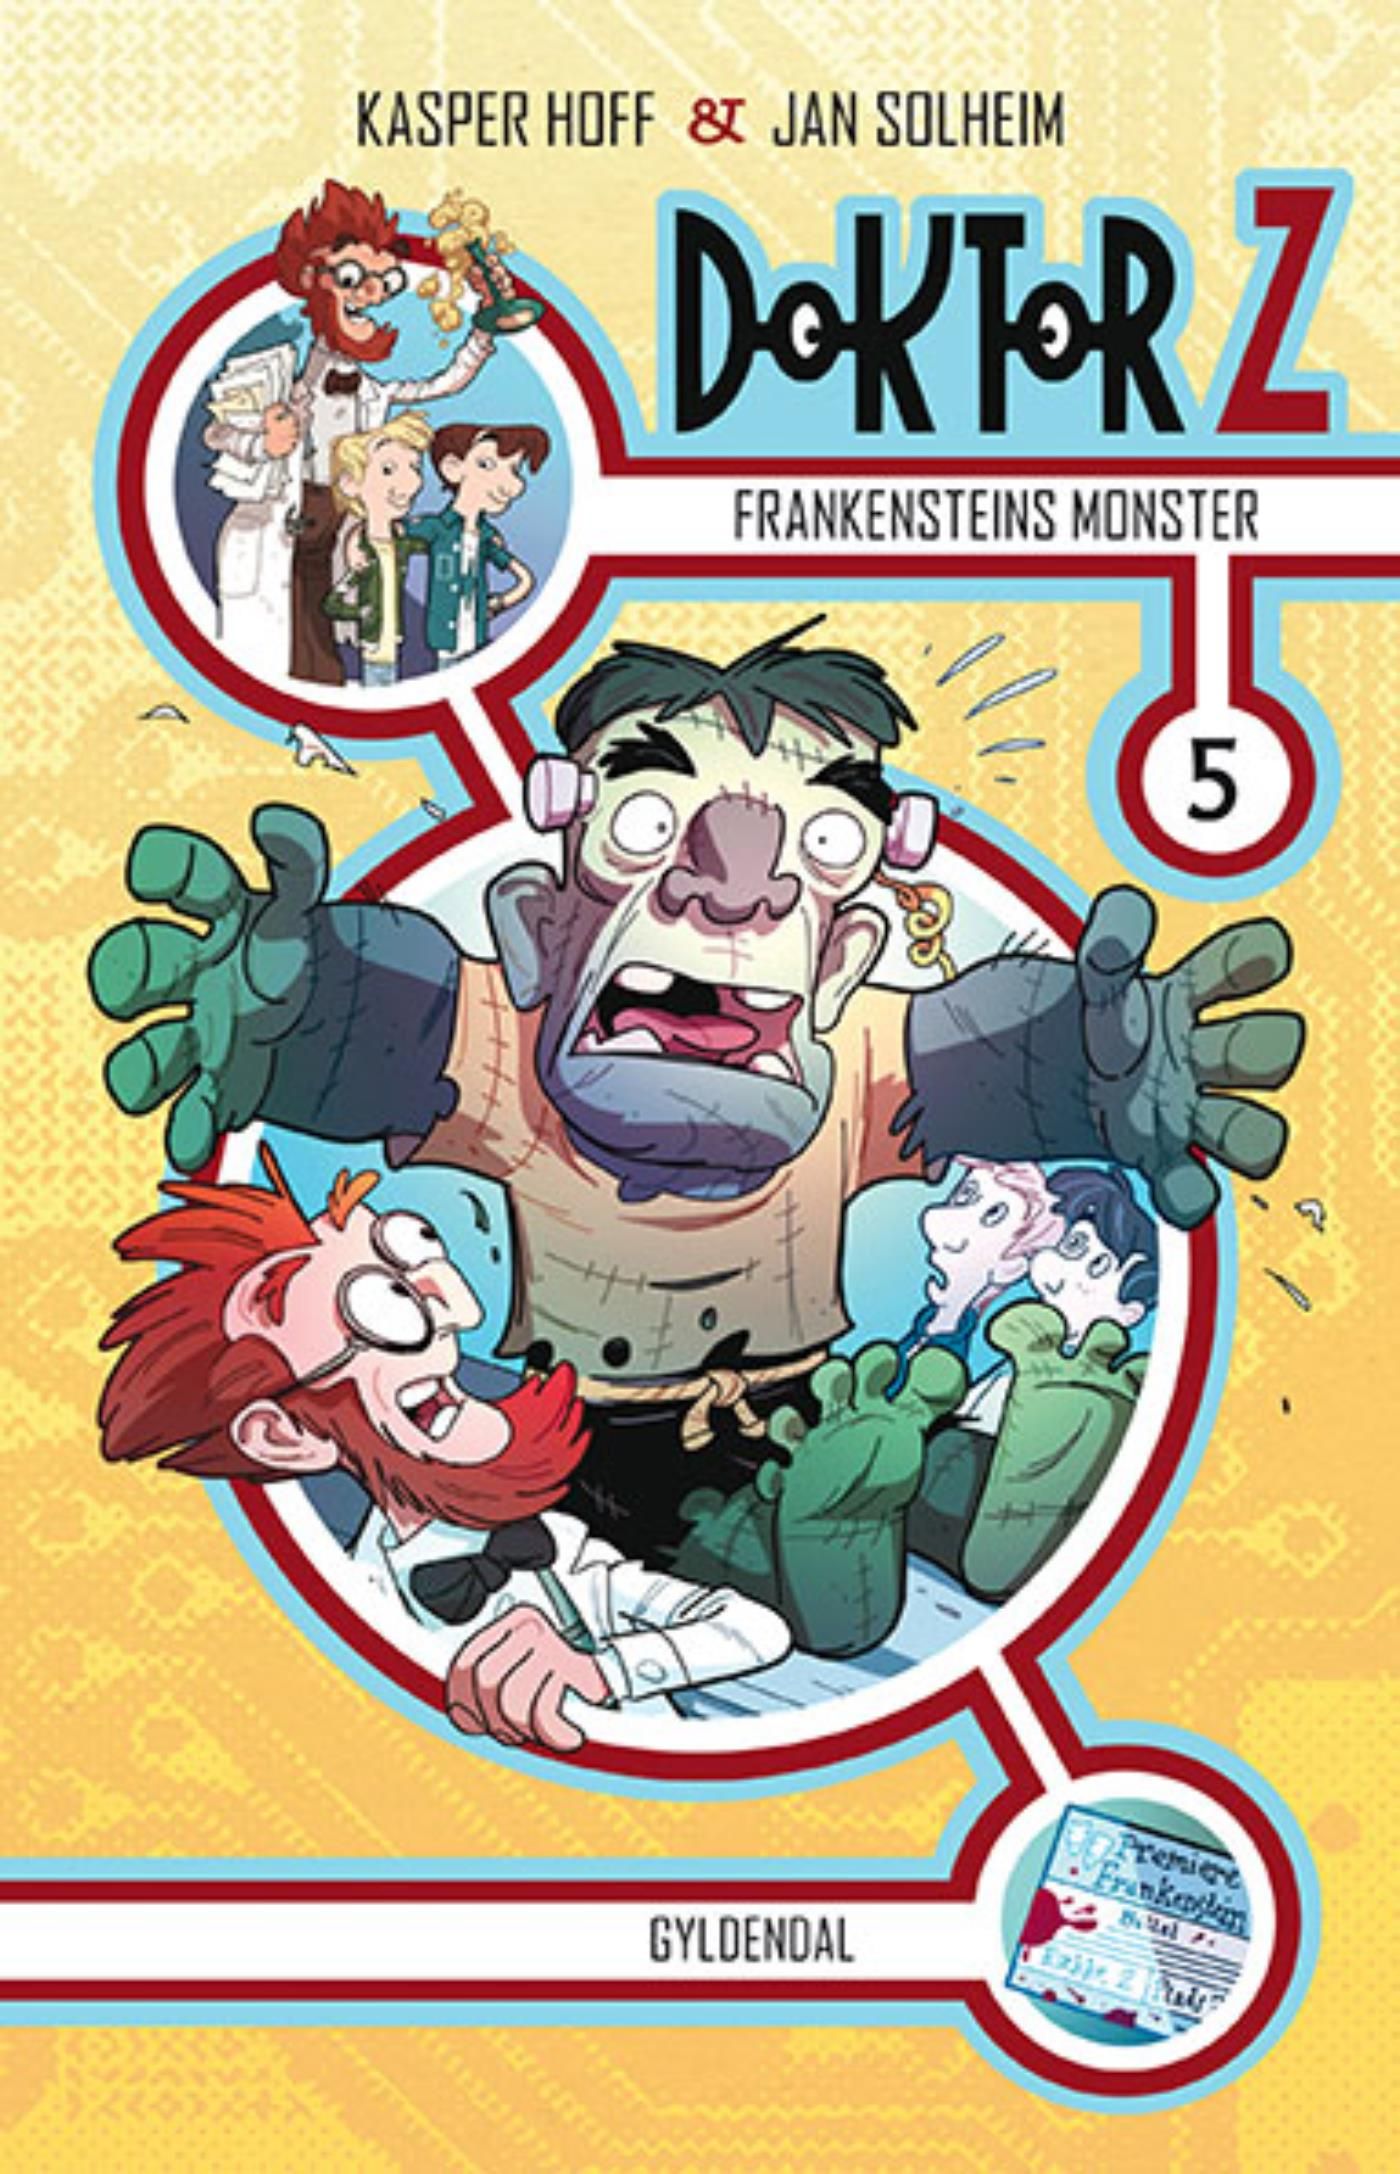 Doktor Z 5 - Frankensteins monster, e-bok av Kasper Hoff